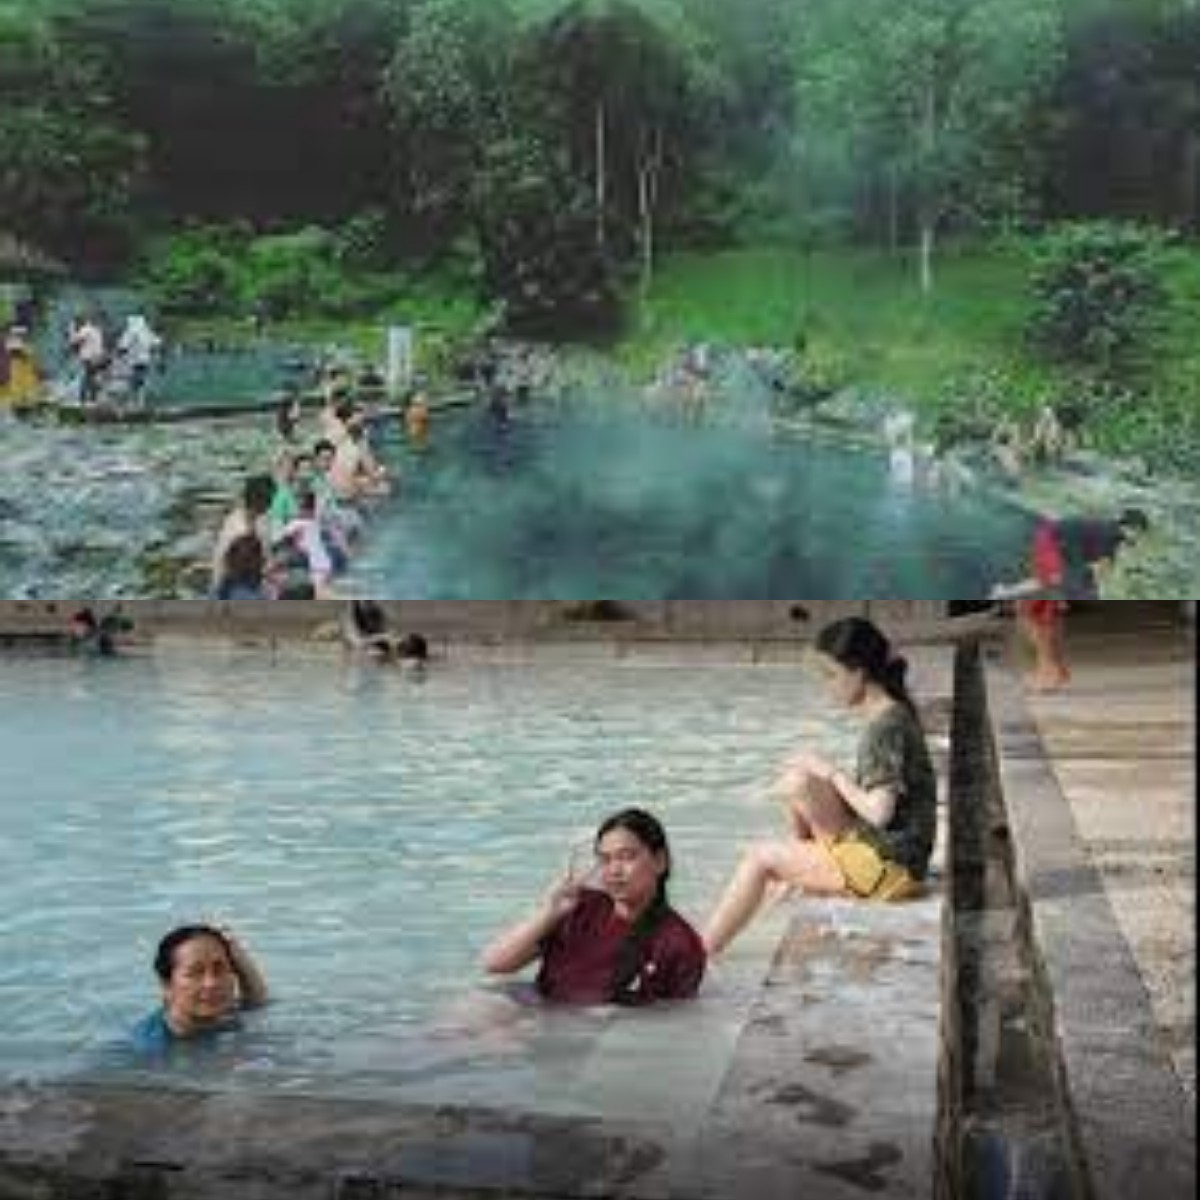 Wisata Sambil Relaksasi! Inilah 5 Wisata Pemandian Air Panas di Lampung 